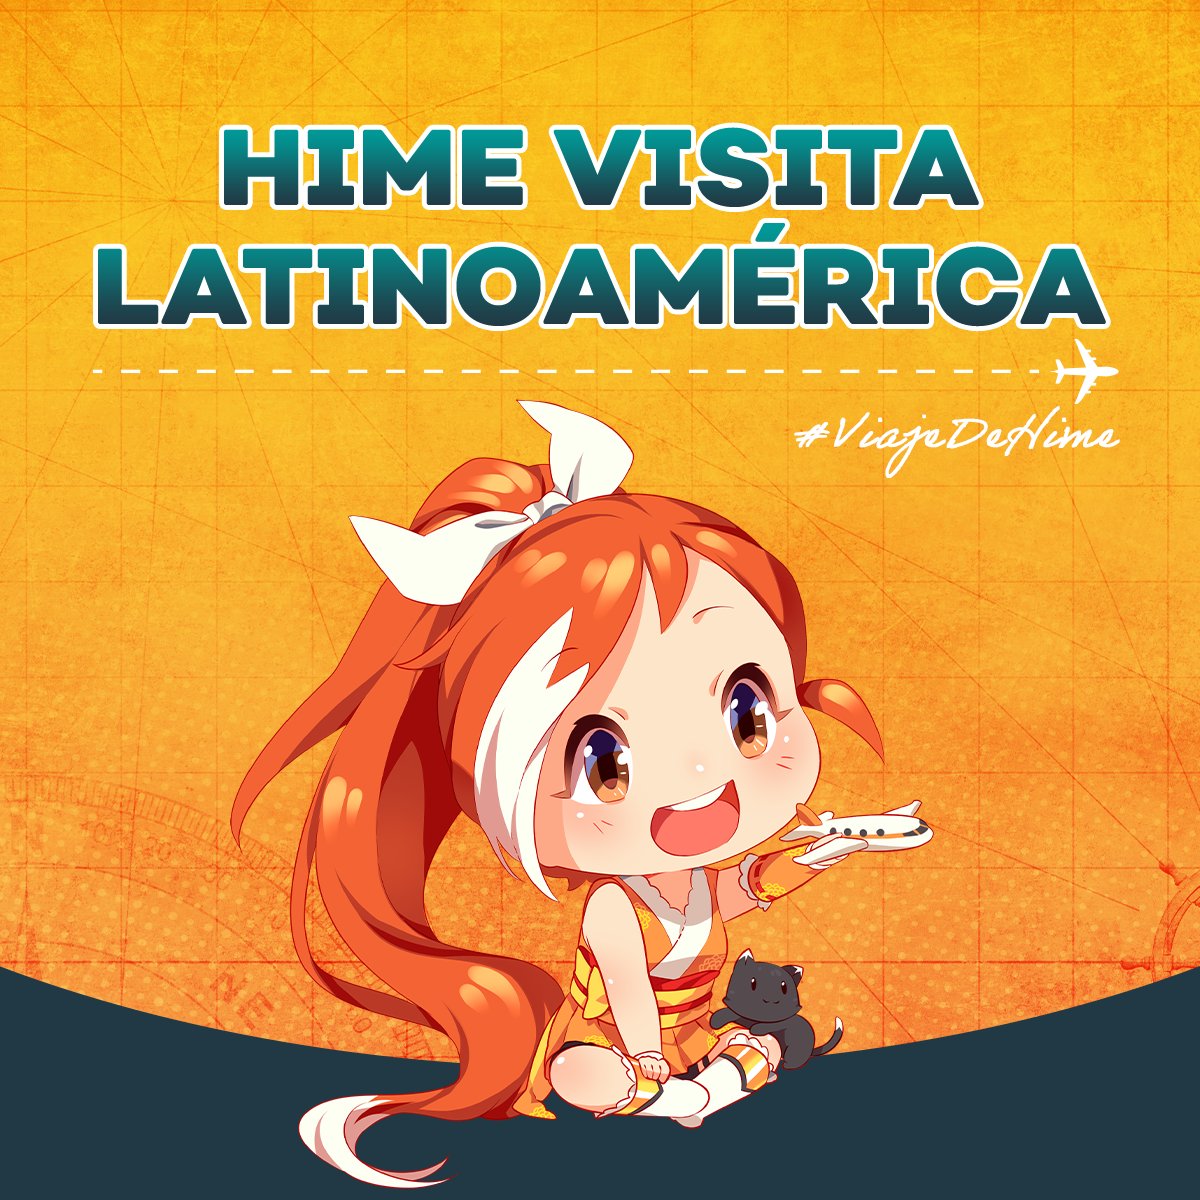 ¡Un sueño hecho realidad!, durante los próximos días visitaré varias partes de Latinoamérica y no podría estar más emocionada✈️✨

Acompáñenme en este #ViajeDeHime en el siguiente hilo🧵👇